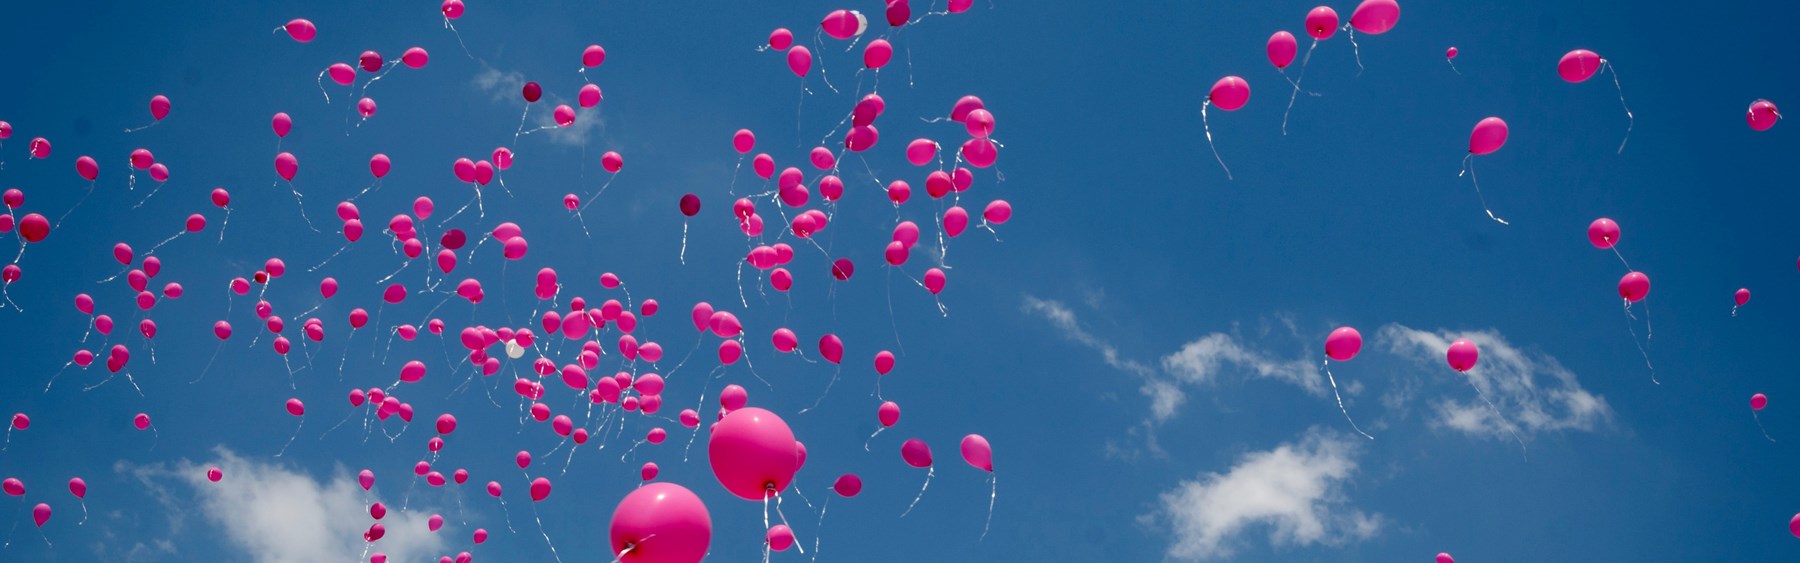 Mange lyserøde balloner stiger til vejrs